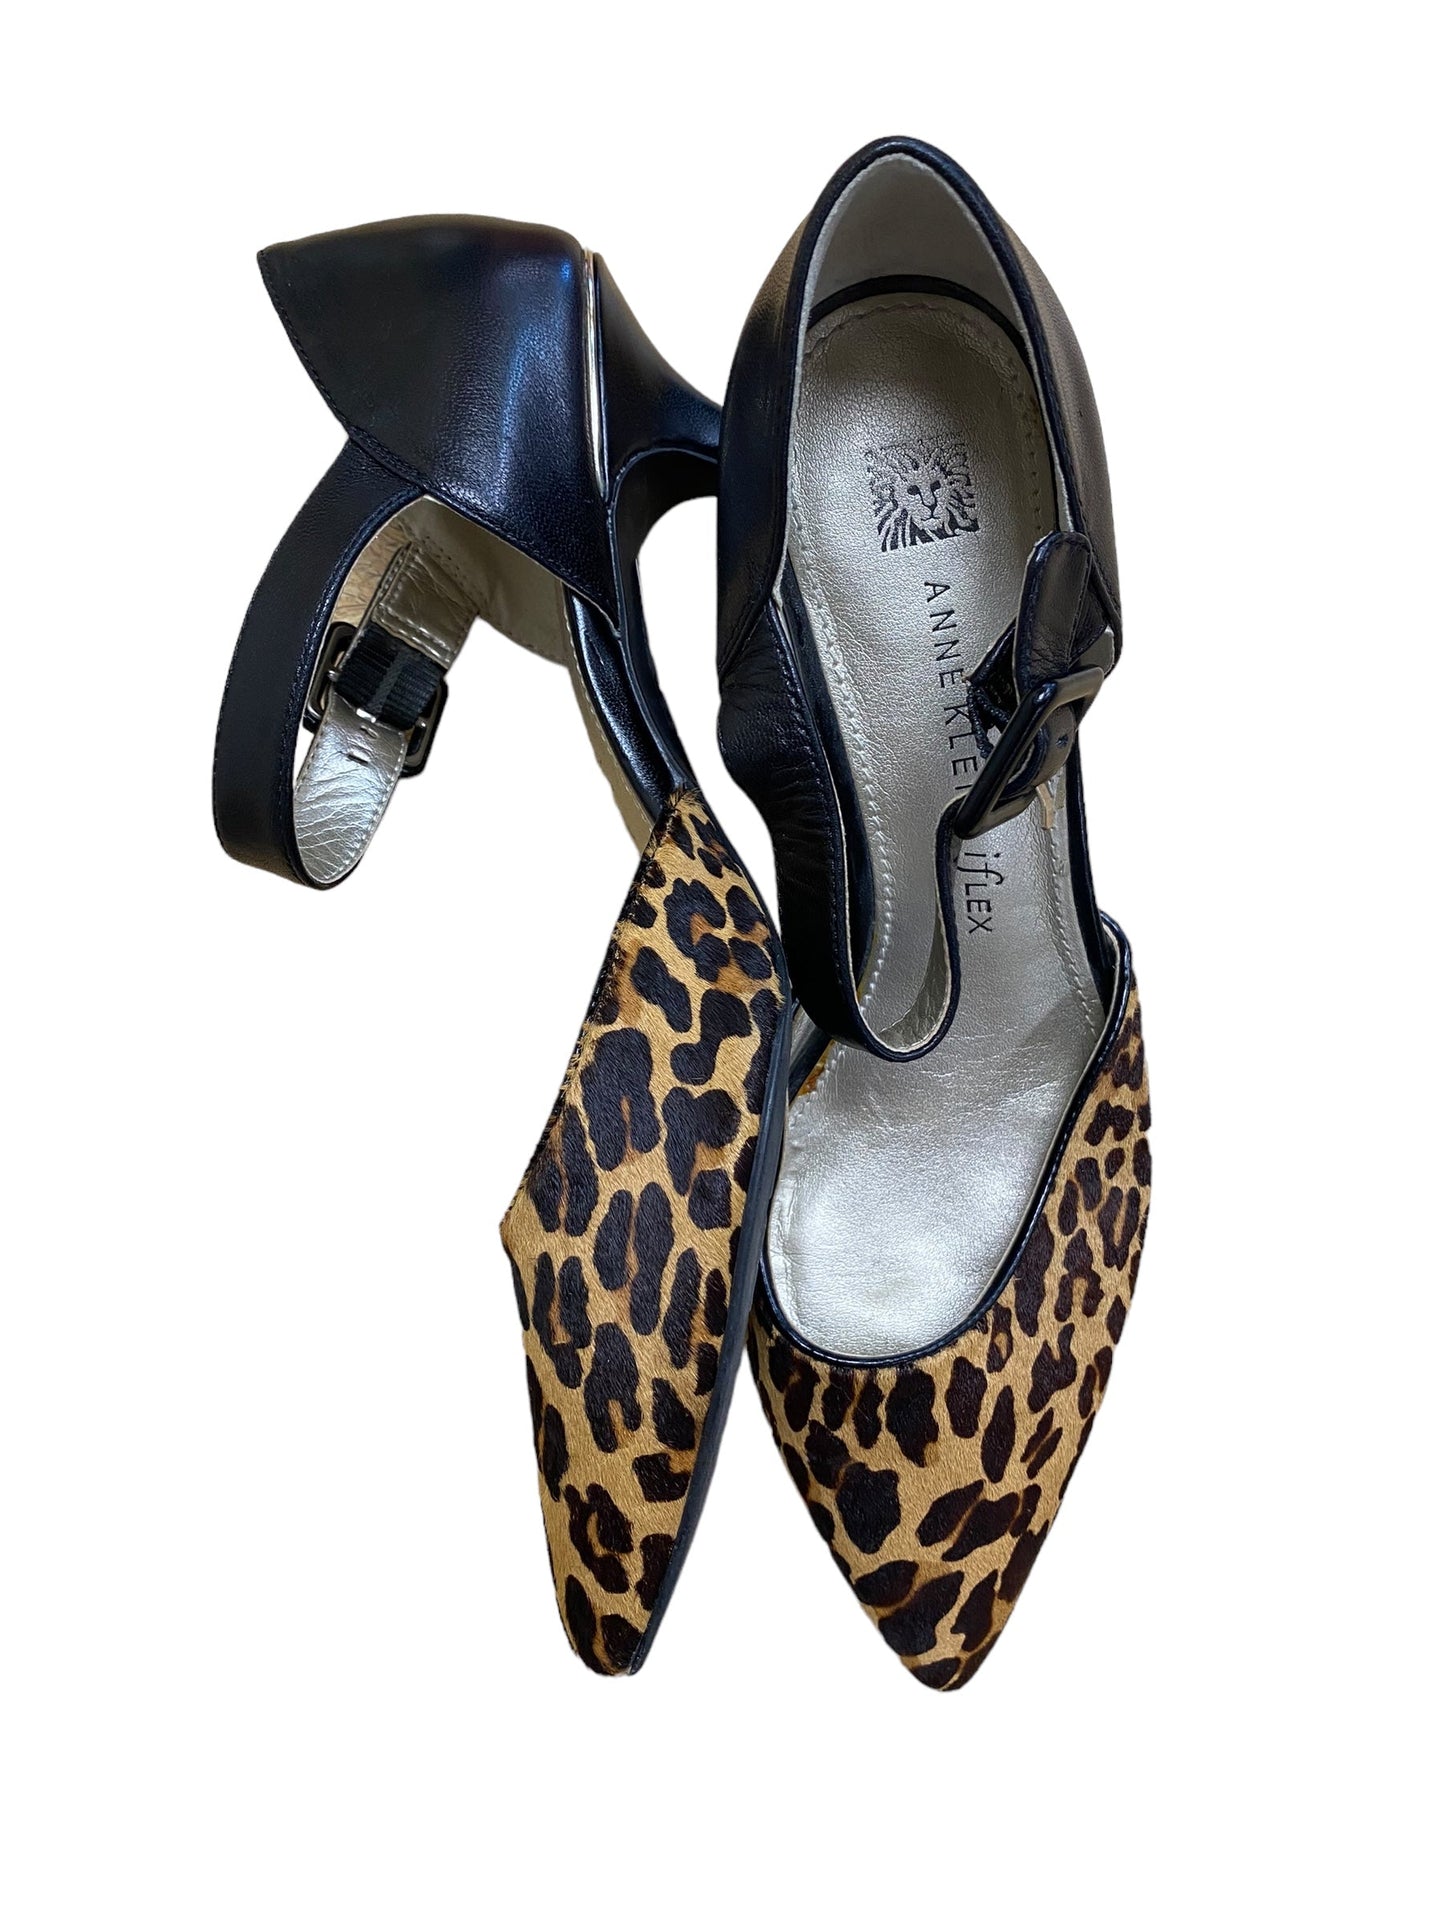 Animal Print Shoes Heels Stiletto Anne Klein, Size 8.5